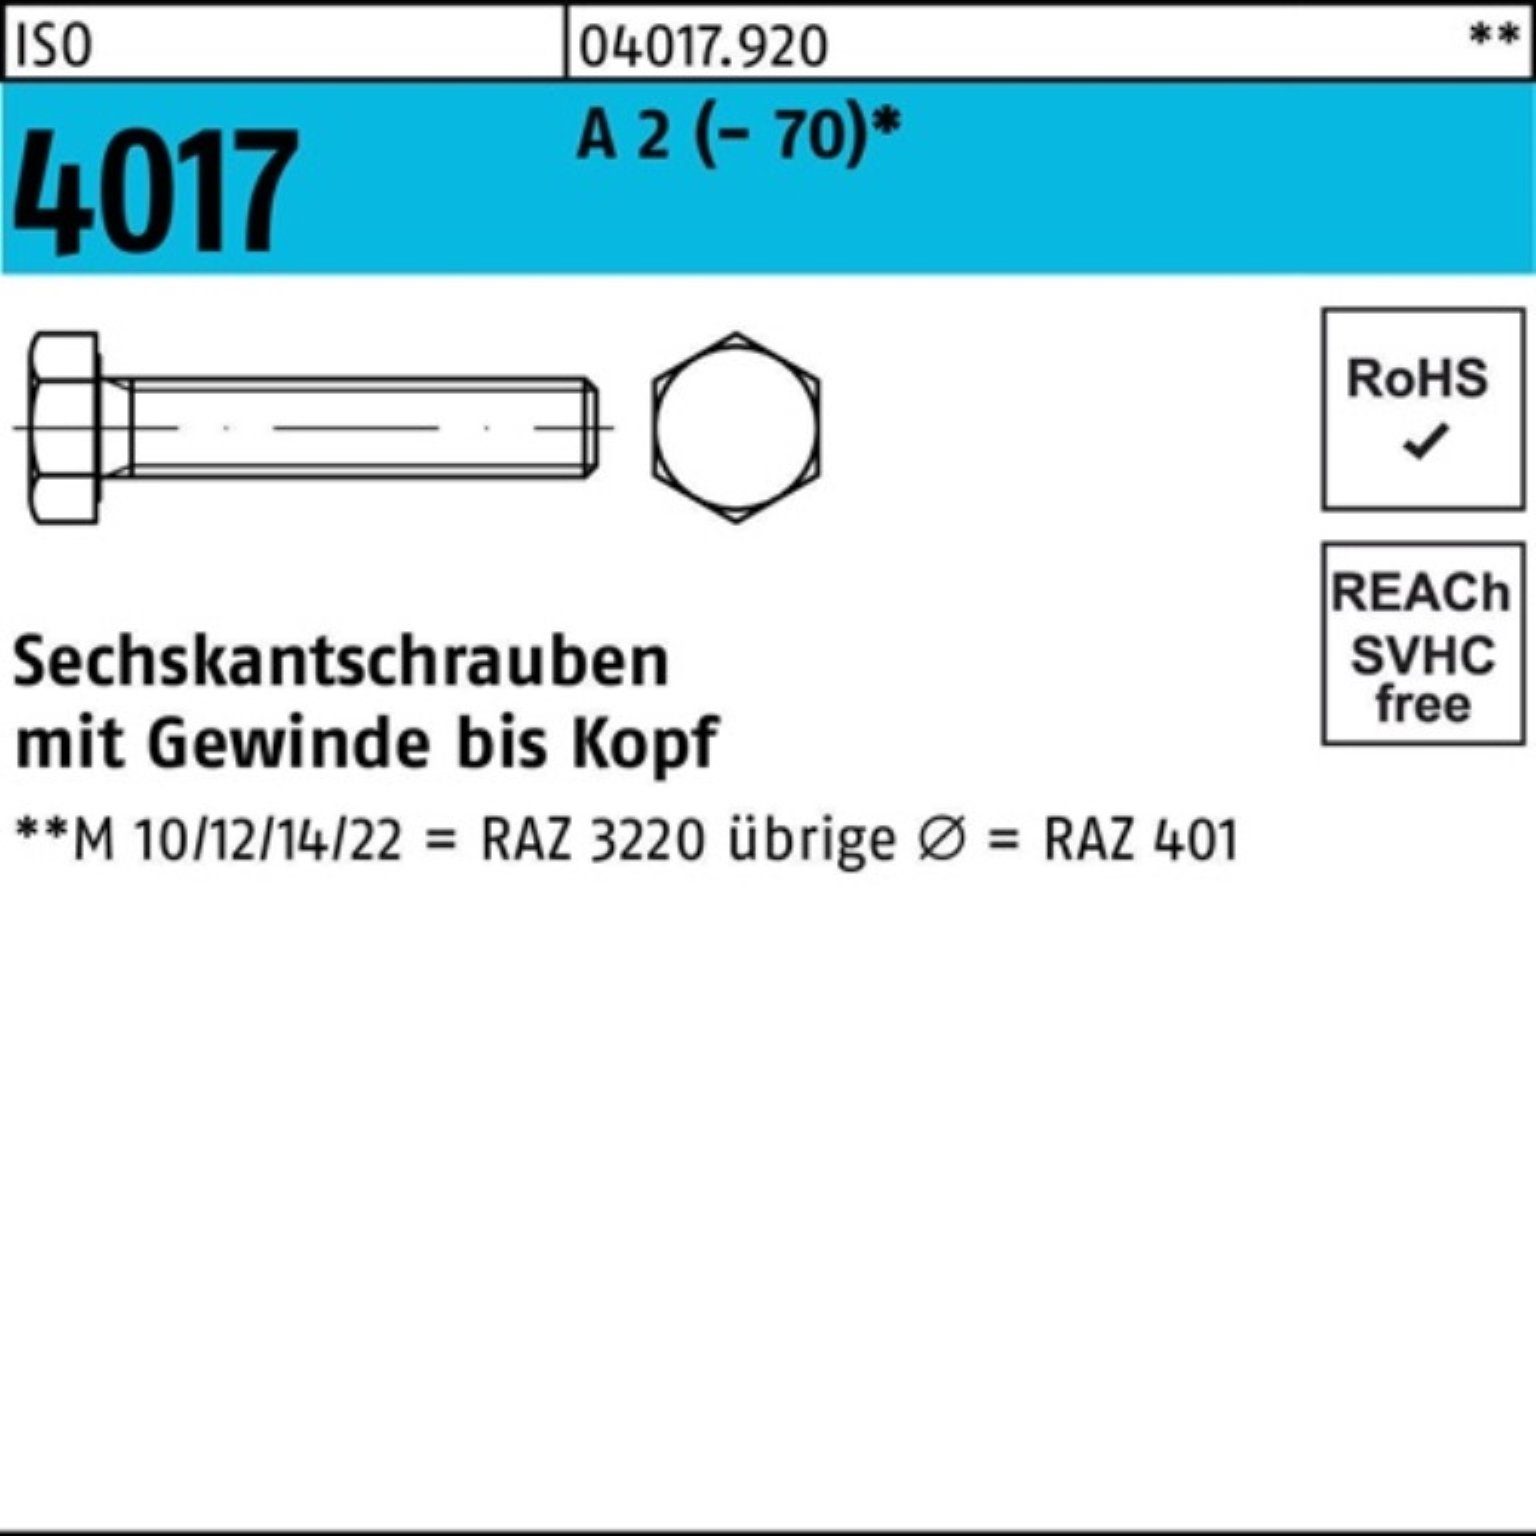 (70) 100 Pack 100 A Bufab Sechskantschraube 4017 ISO 2 Sechskantschraube 100er Stück M6x VG